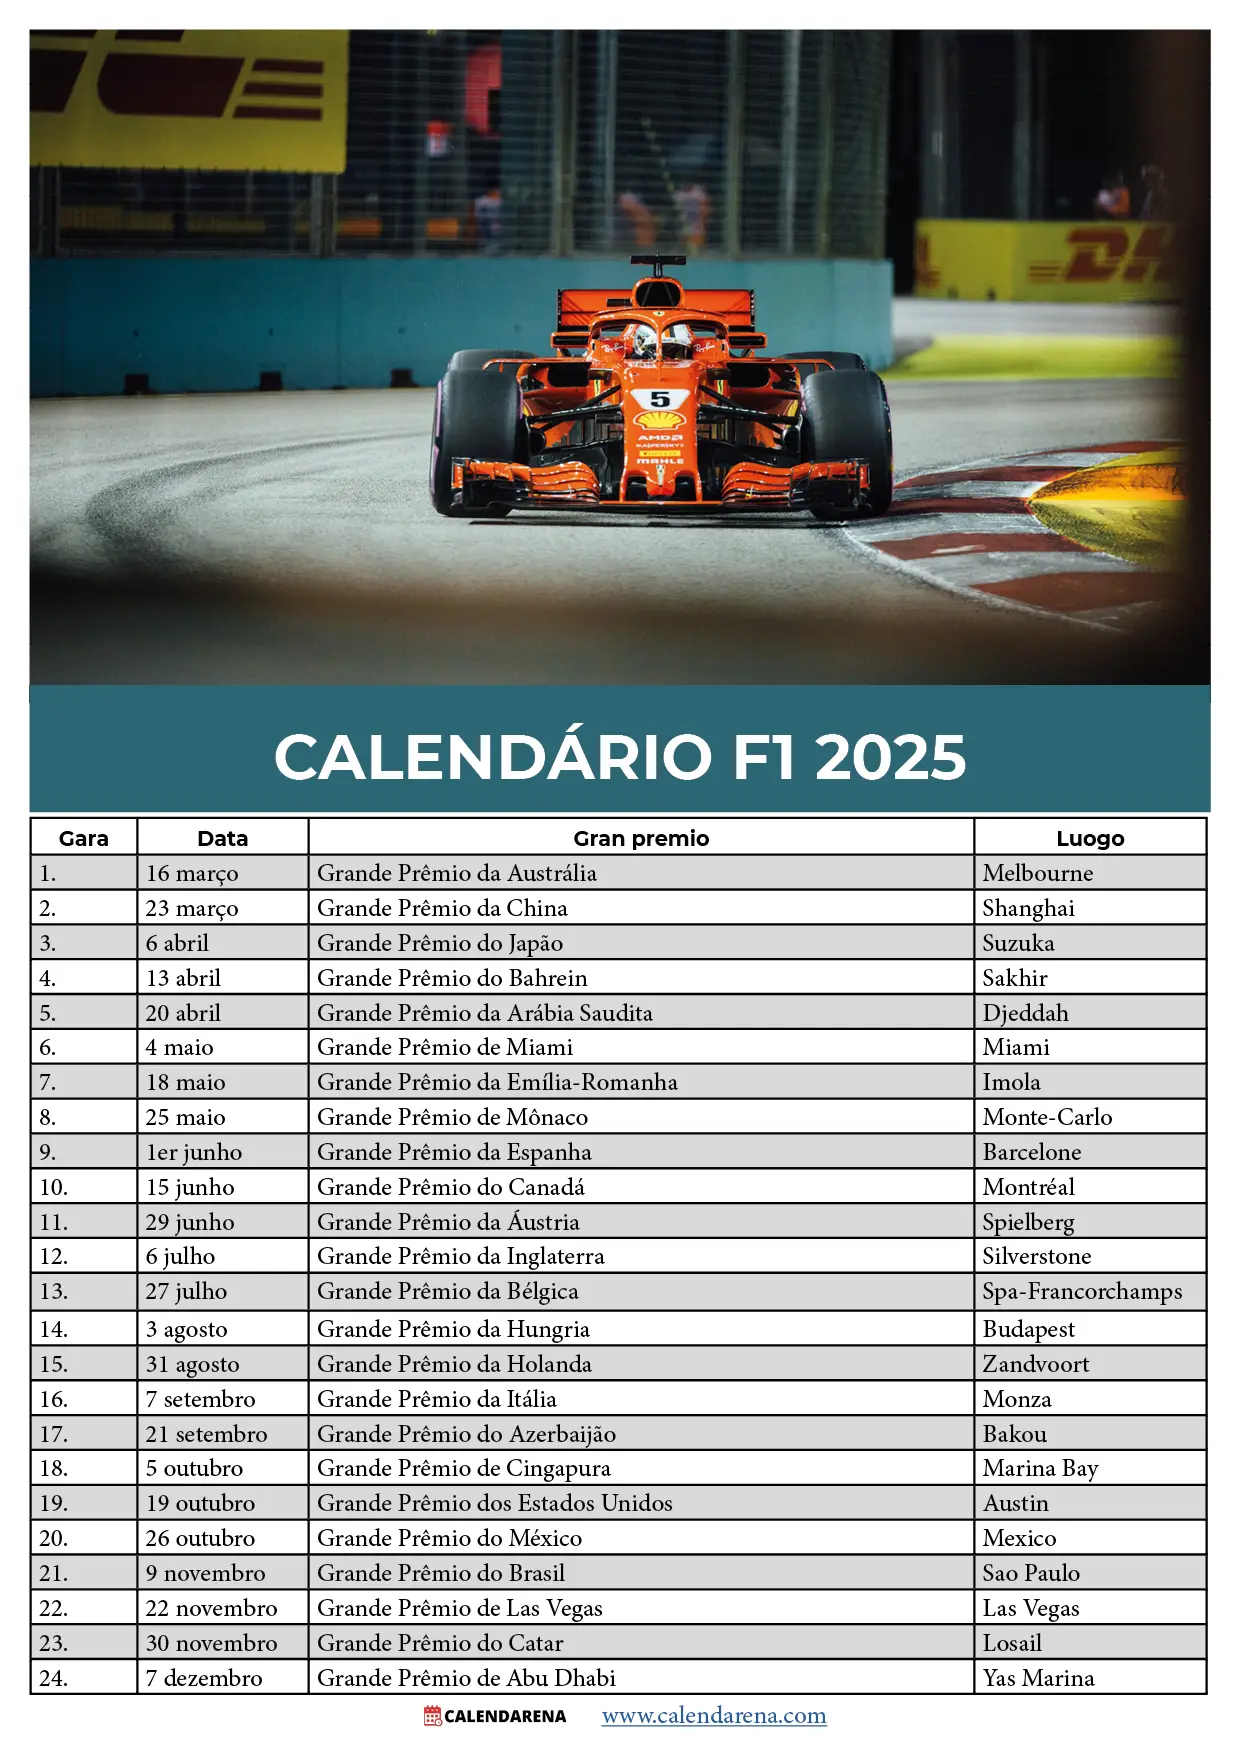 Calendário F1 2025